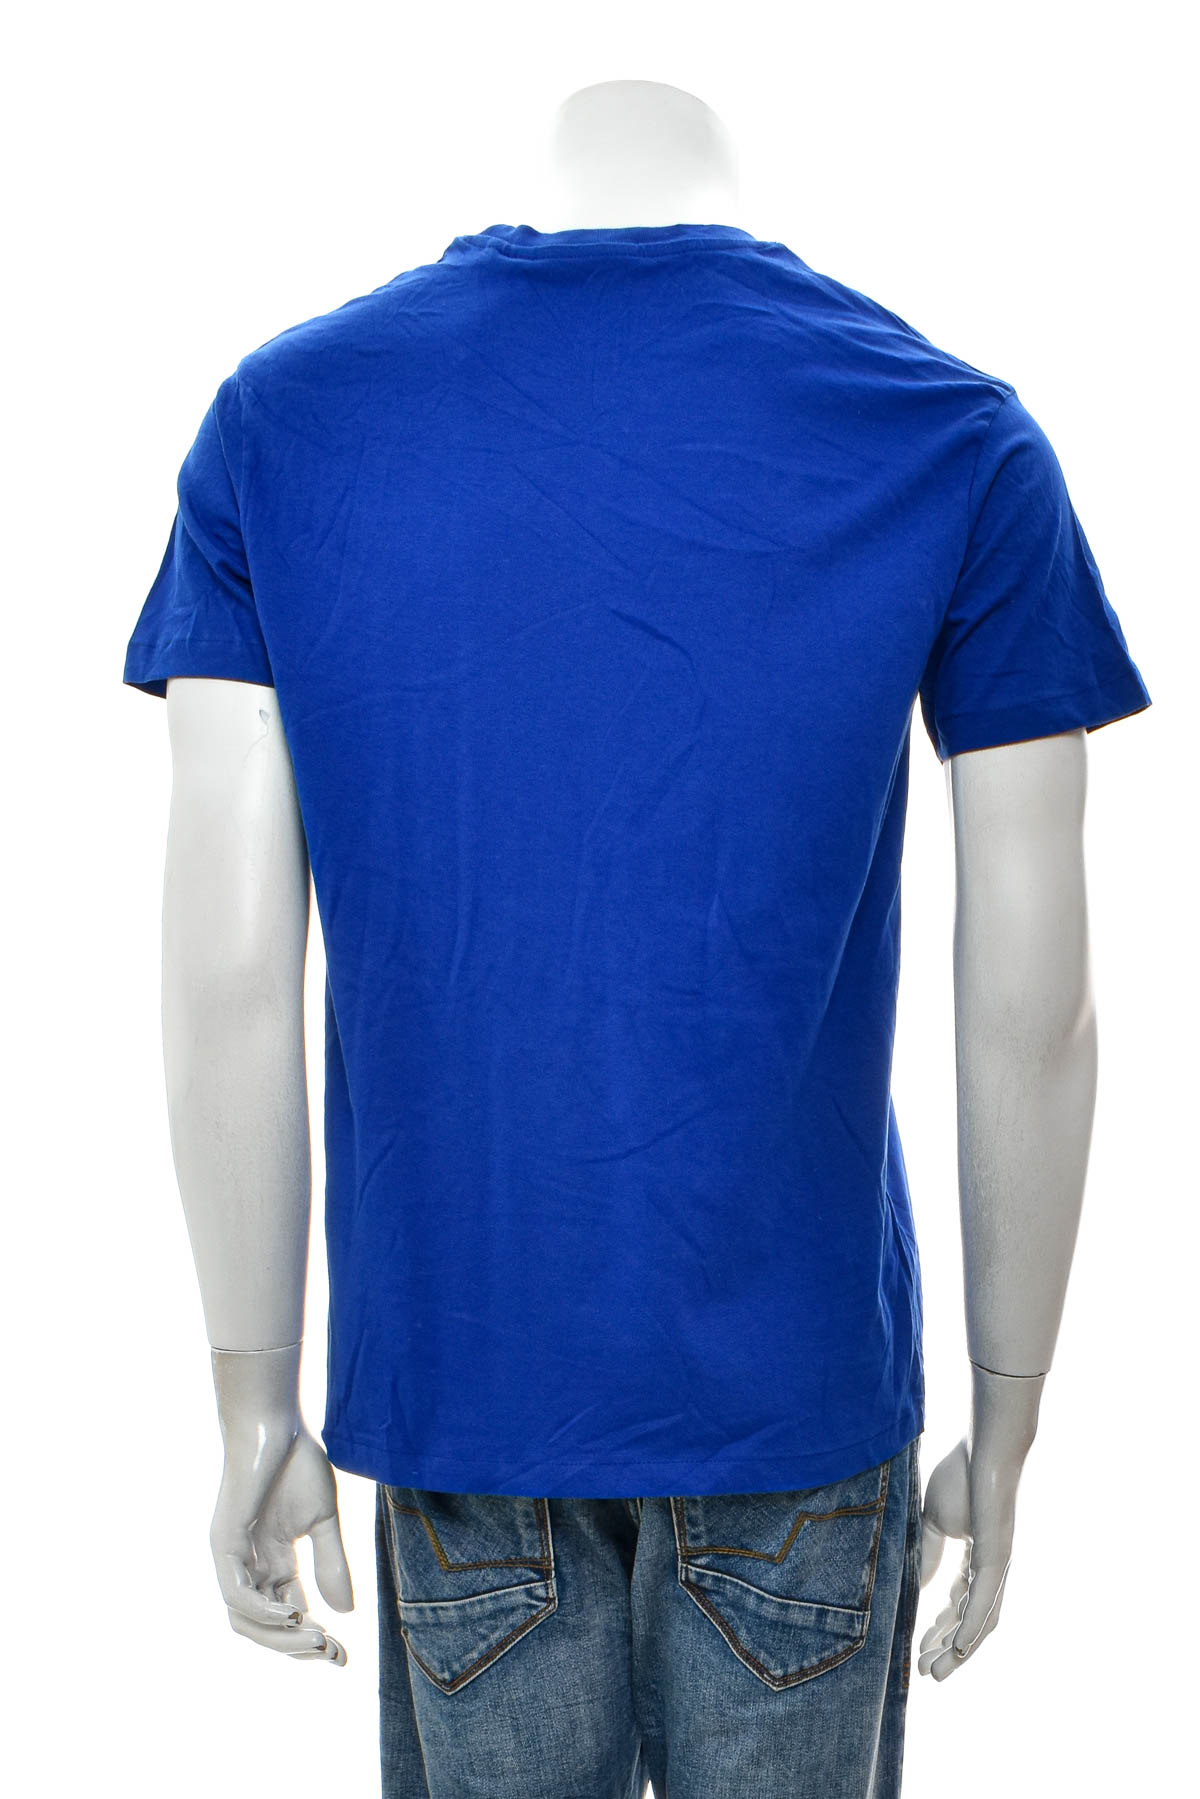 Men's T-shirt - B&C Collection - 1